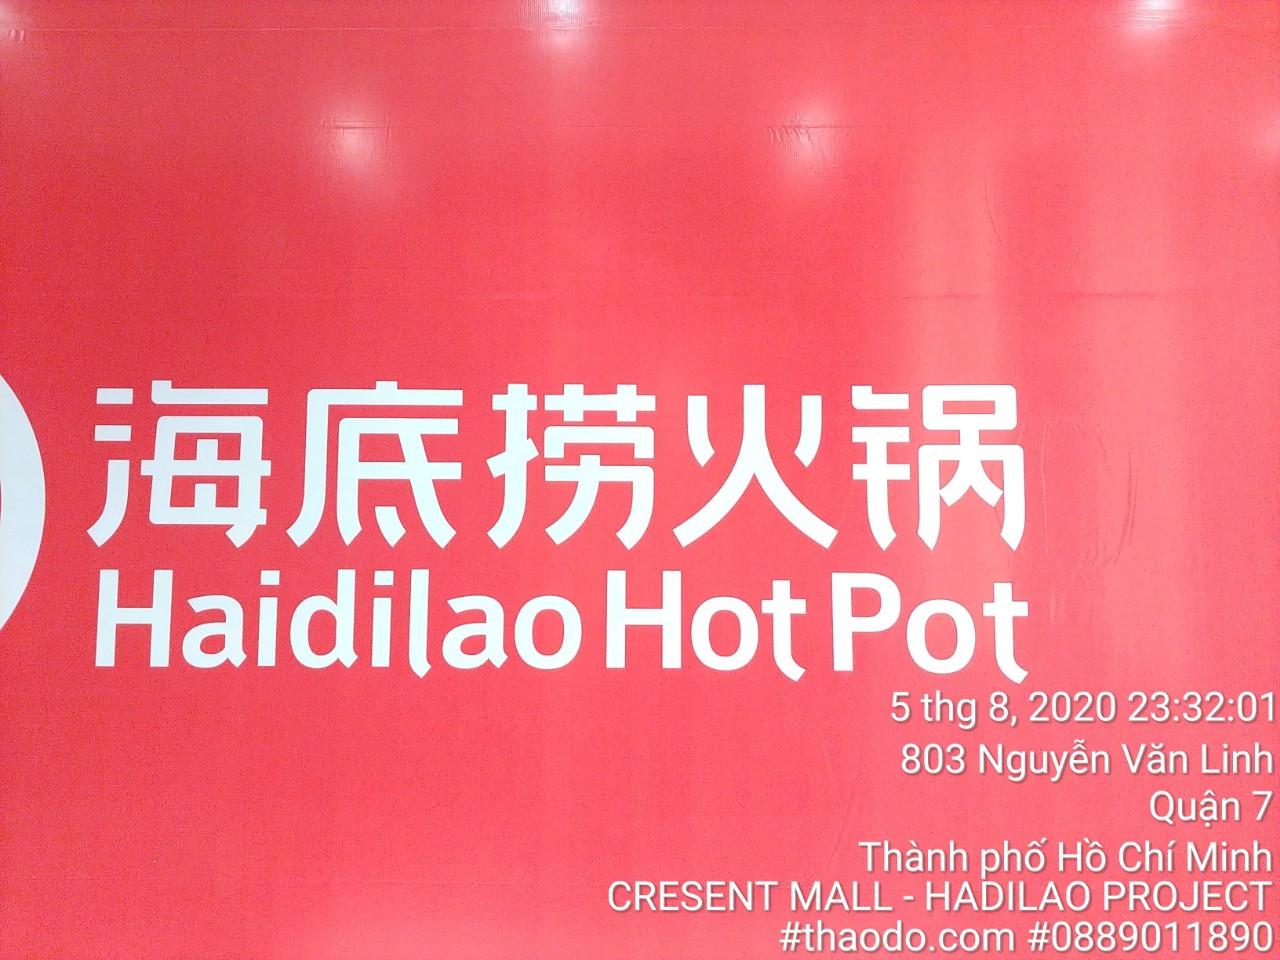 Vận chuyển vật tư thi công cho chuỗi nhà hàng Haidilao - HCM